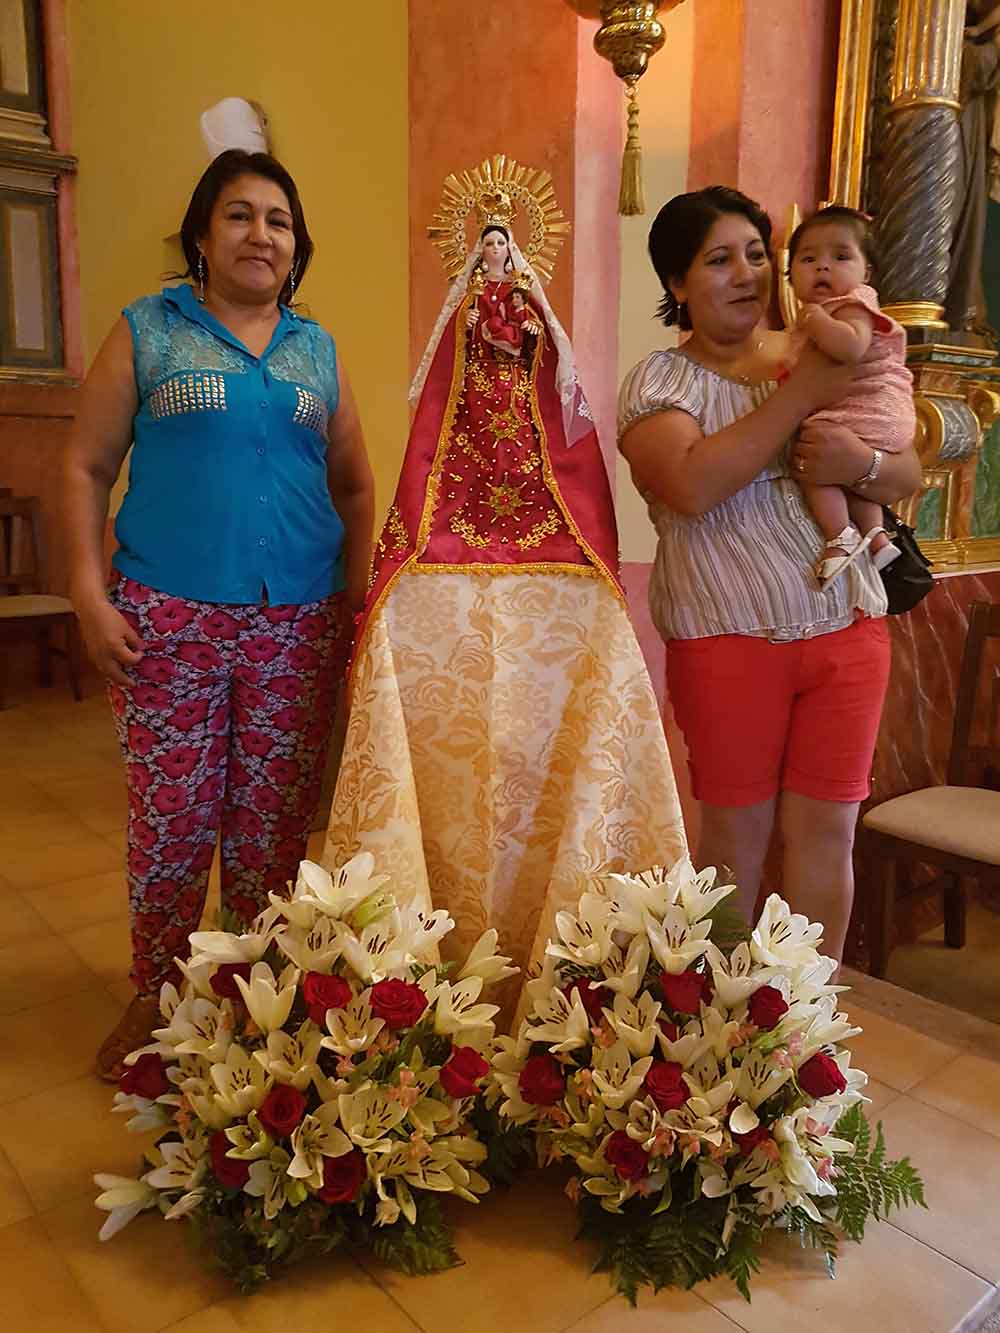 La comunidad boliviana de Caravaca celebrará la festividad de la Virgen de la Urkupiña el 13 de agosto